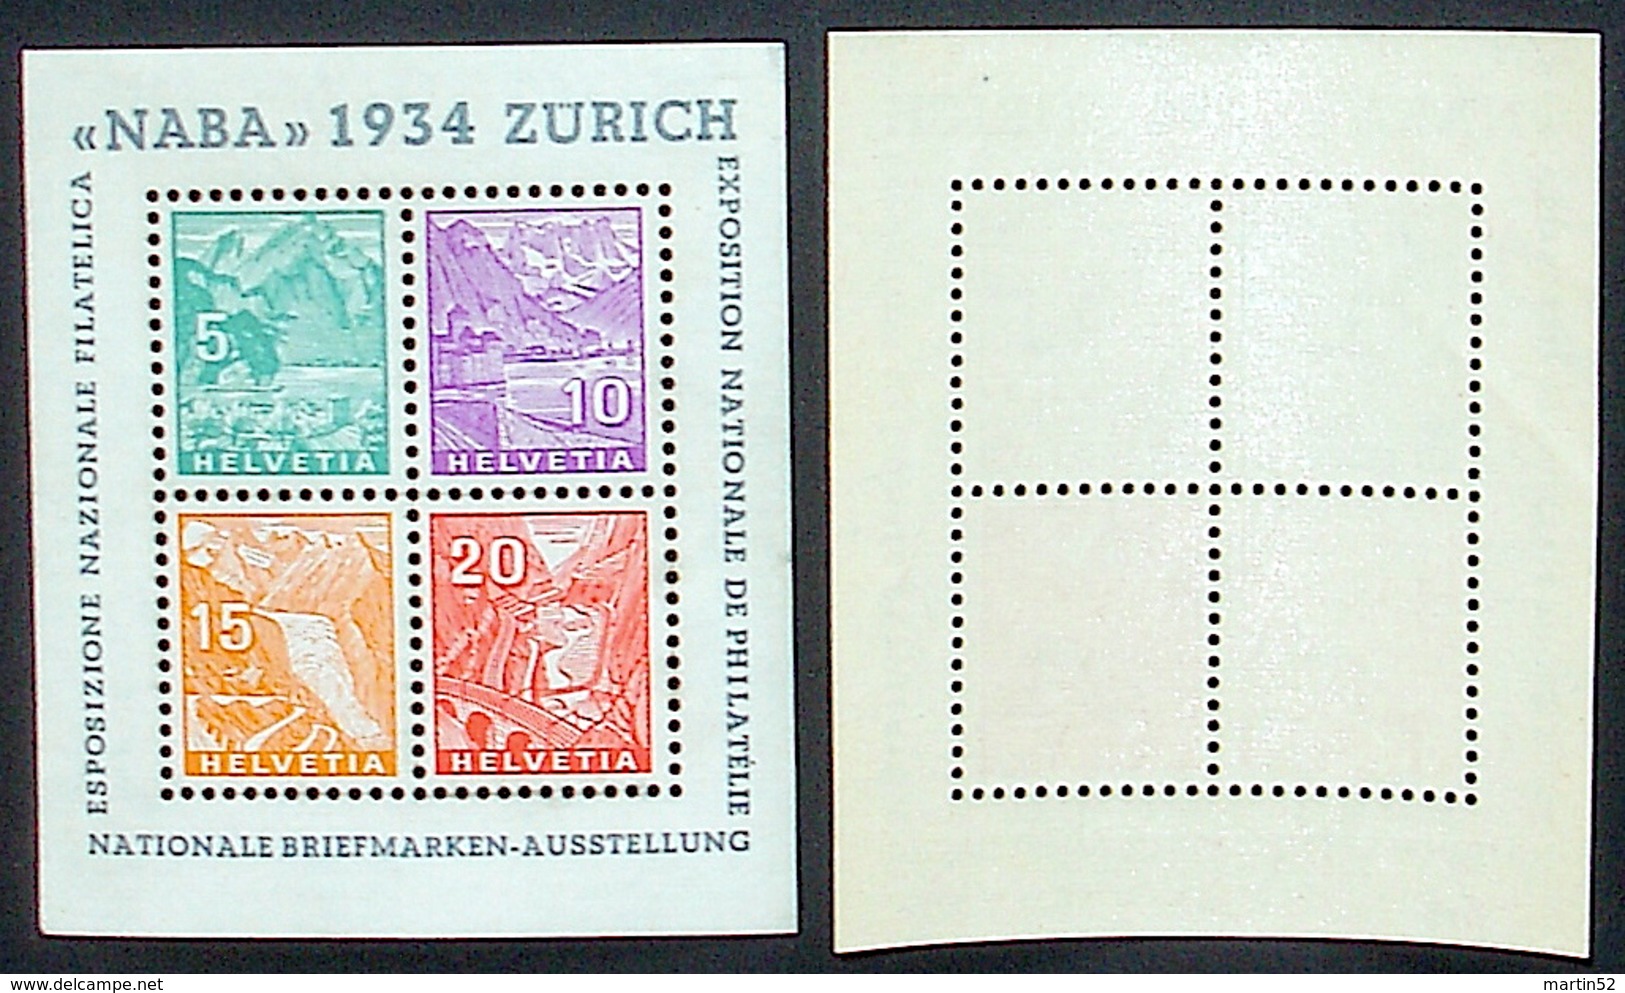 Schweiz Suisse Expo "NABA 1934" Zumstein WIII-1 Michel Block Yvert 1 BF 1 ** Postfrisch MNH  Plus Ausstellung-Vignette - Blocs & Feuillets